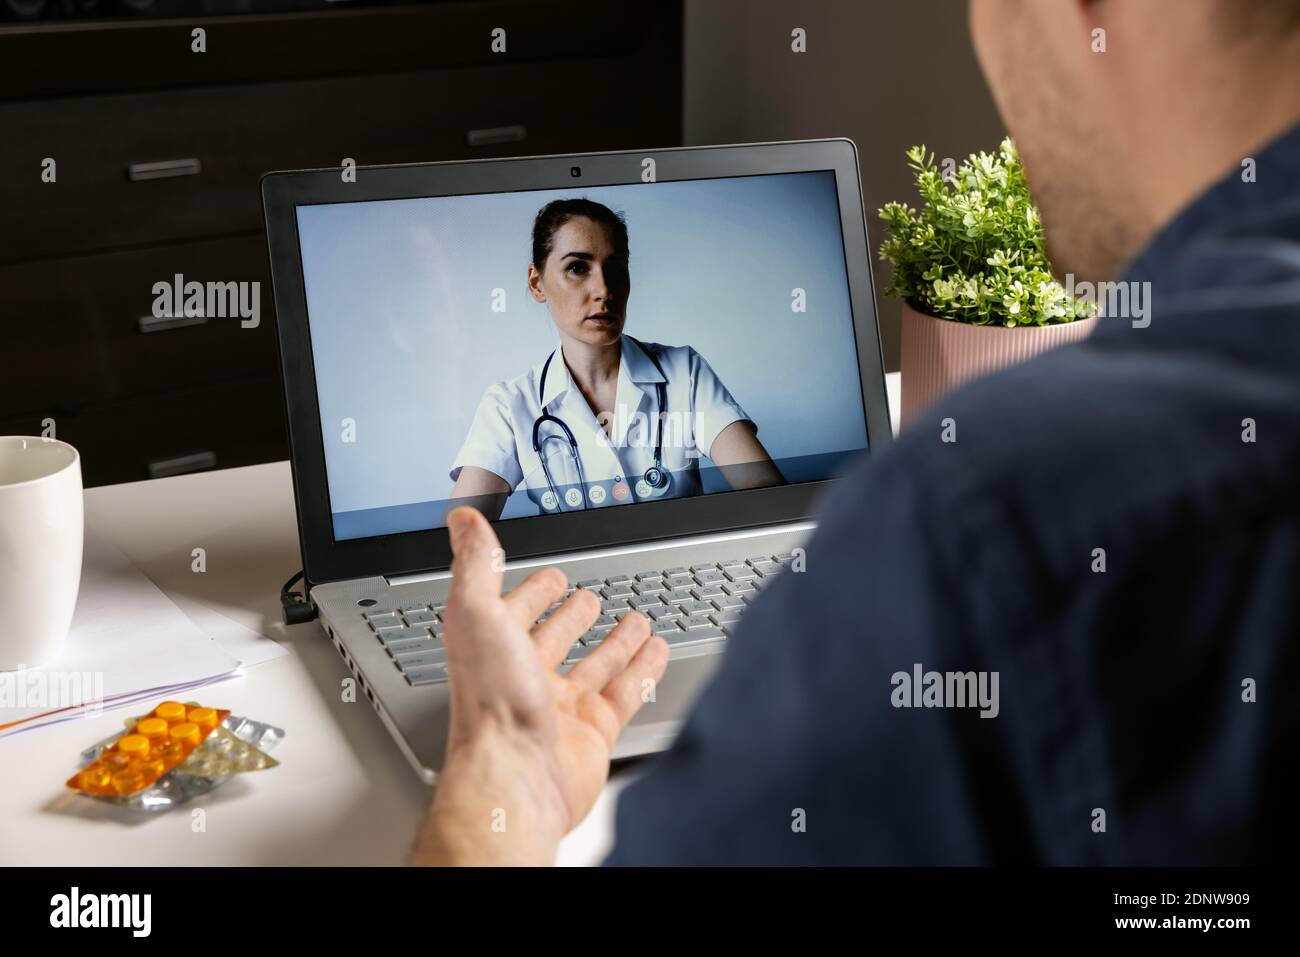 consultation de médecin en ligne - homme parlant avec le médecin sur ordinateur portable à la maison pendant les appels vidéo de télémédecine Banque D'Images